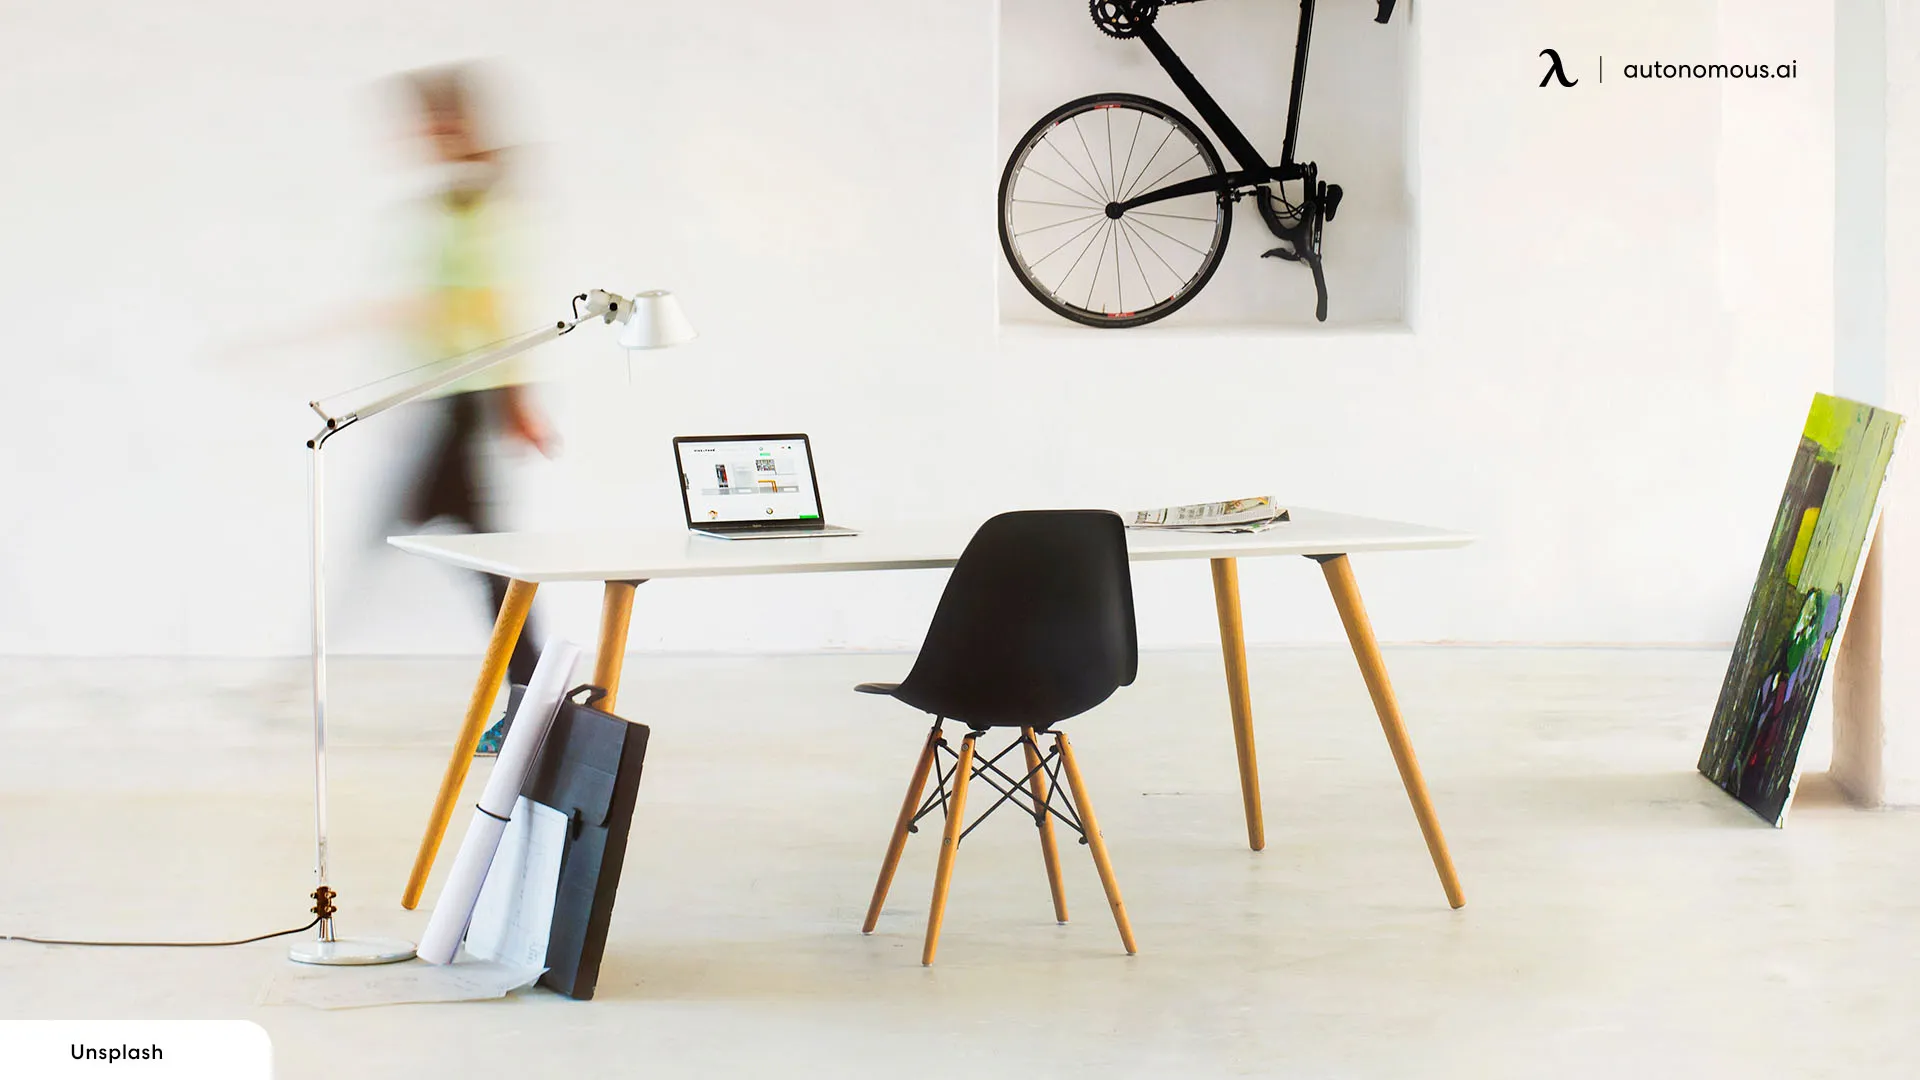 Clean, Simplistic Looks - mid century office